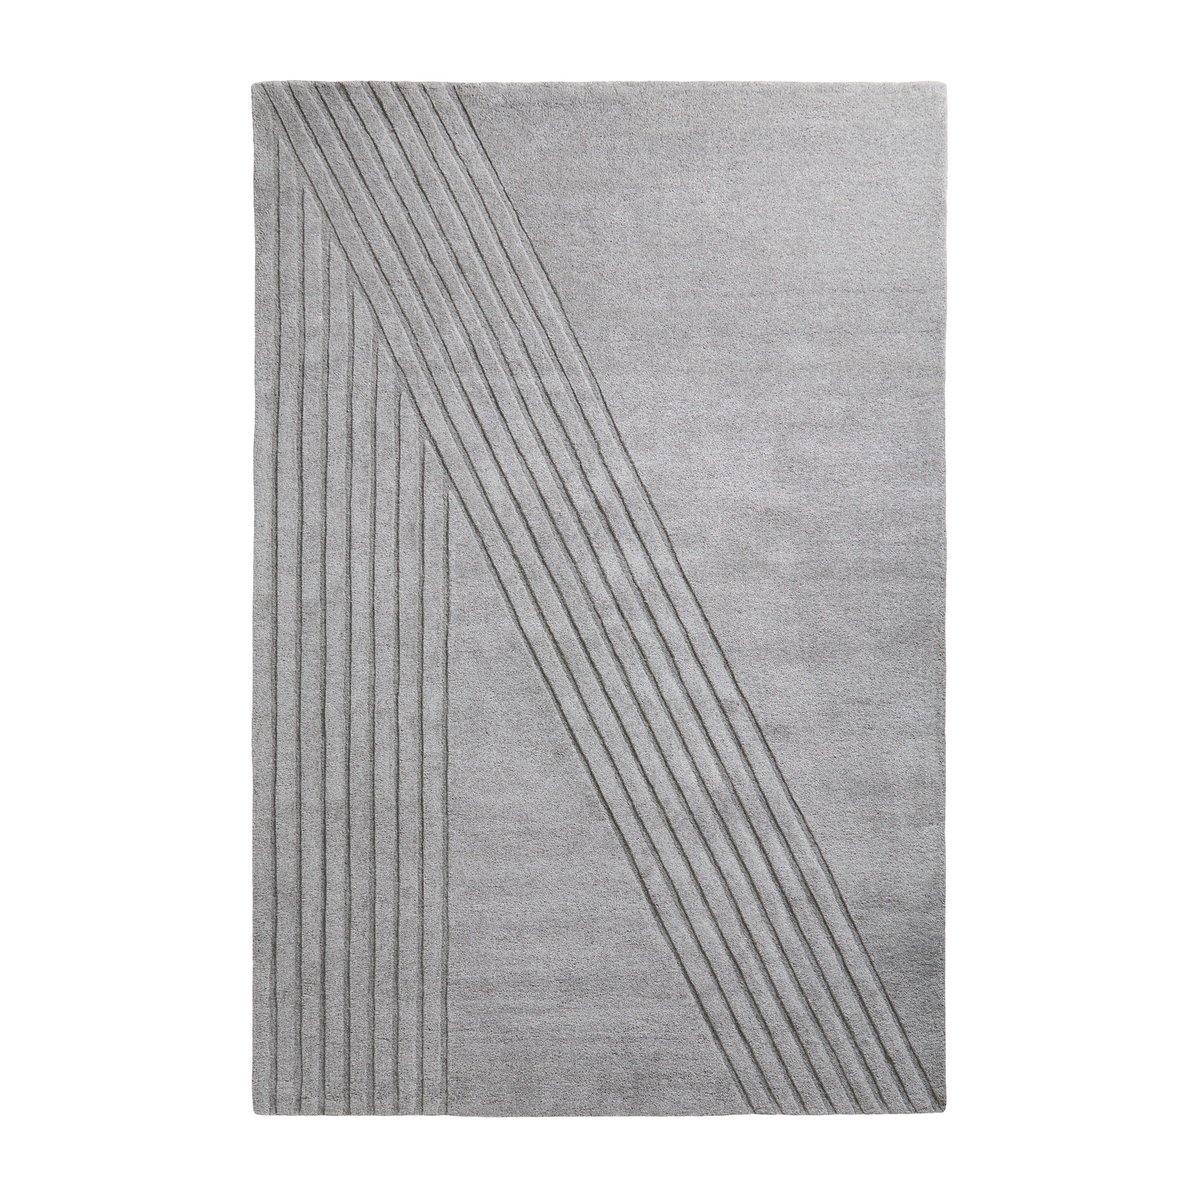 Woud Kyoto vloerkleed grijs 200x300 cm